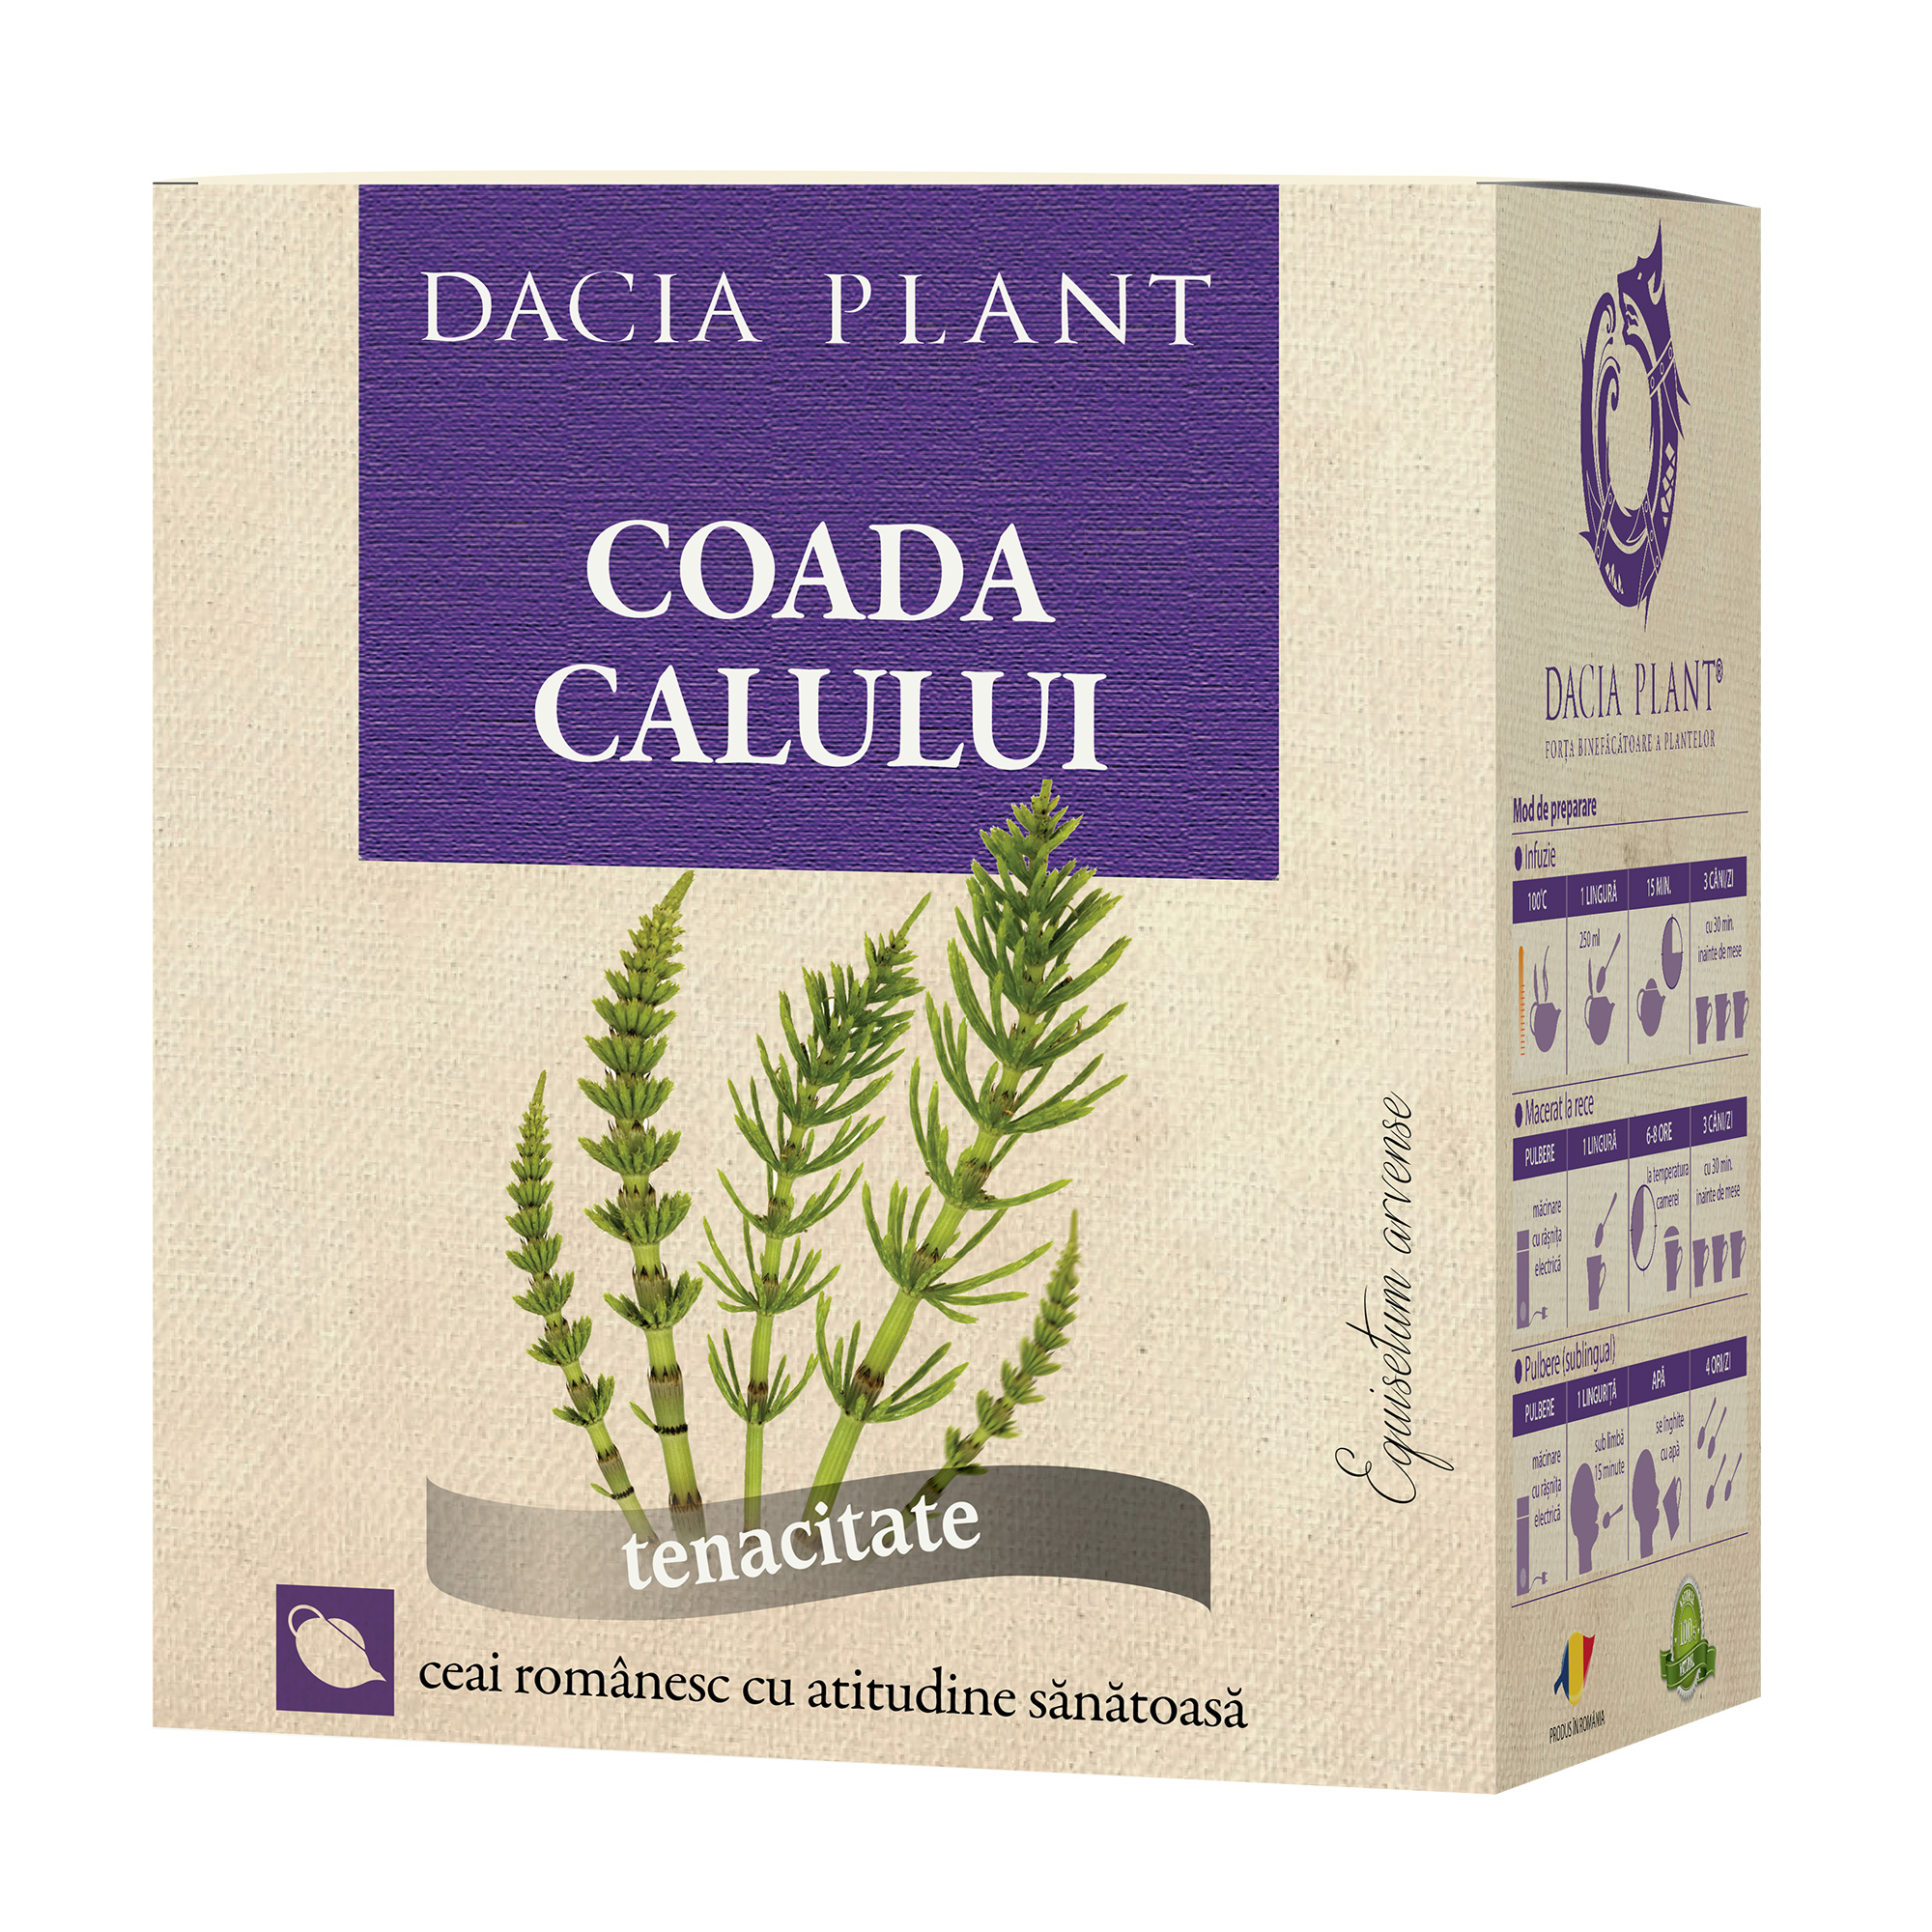 Ceai de Coada Calului Dacia Plant imagine noua